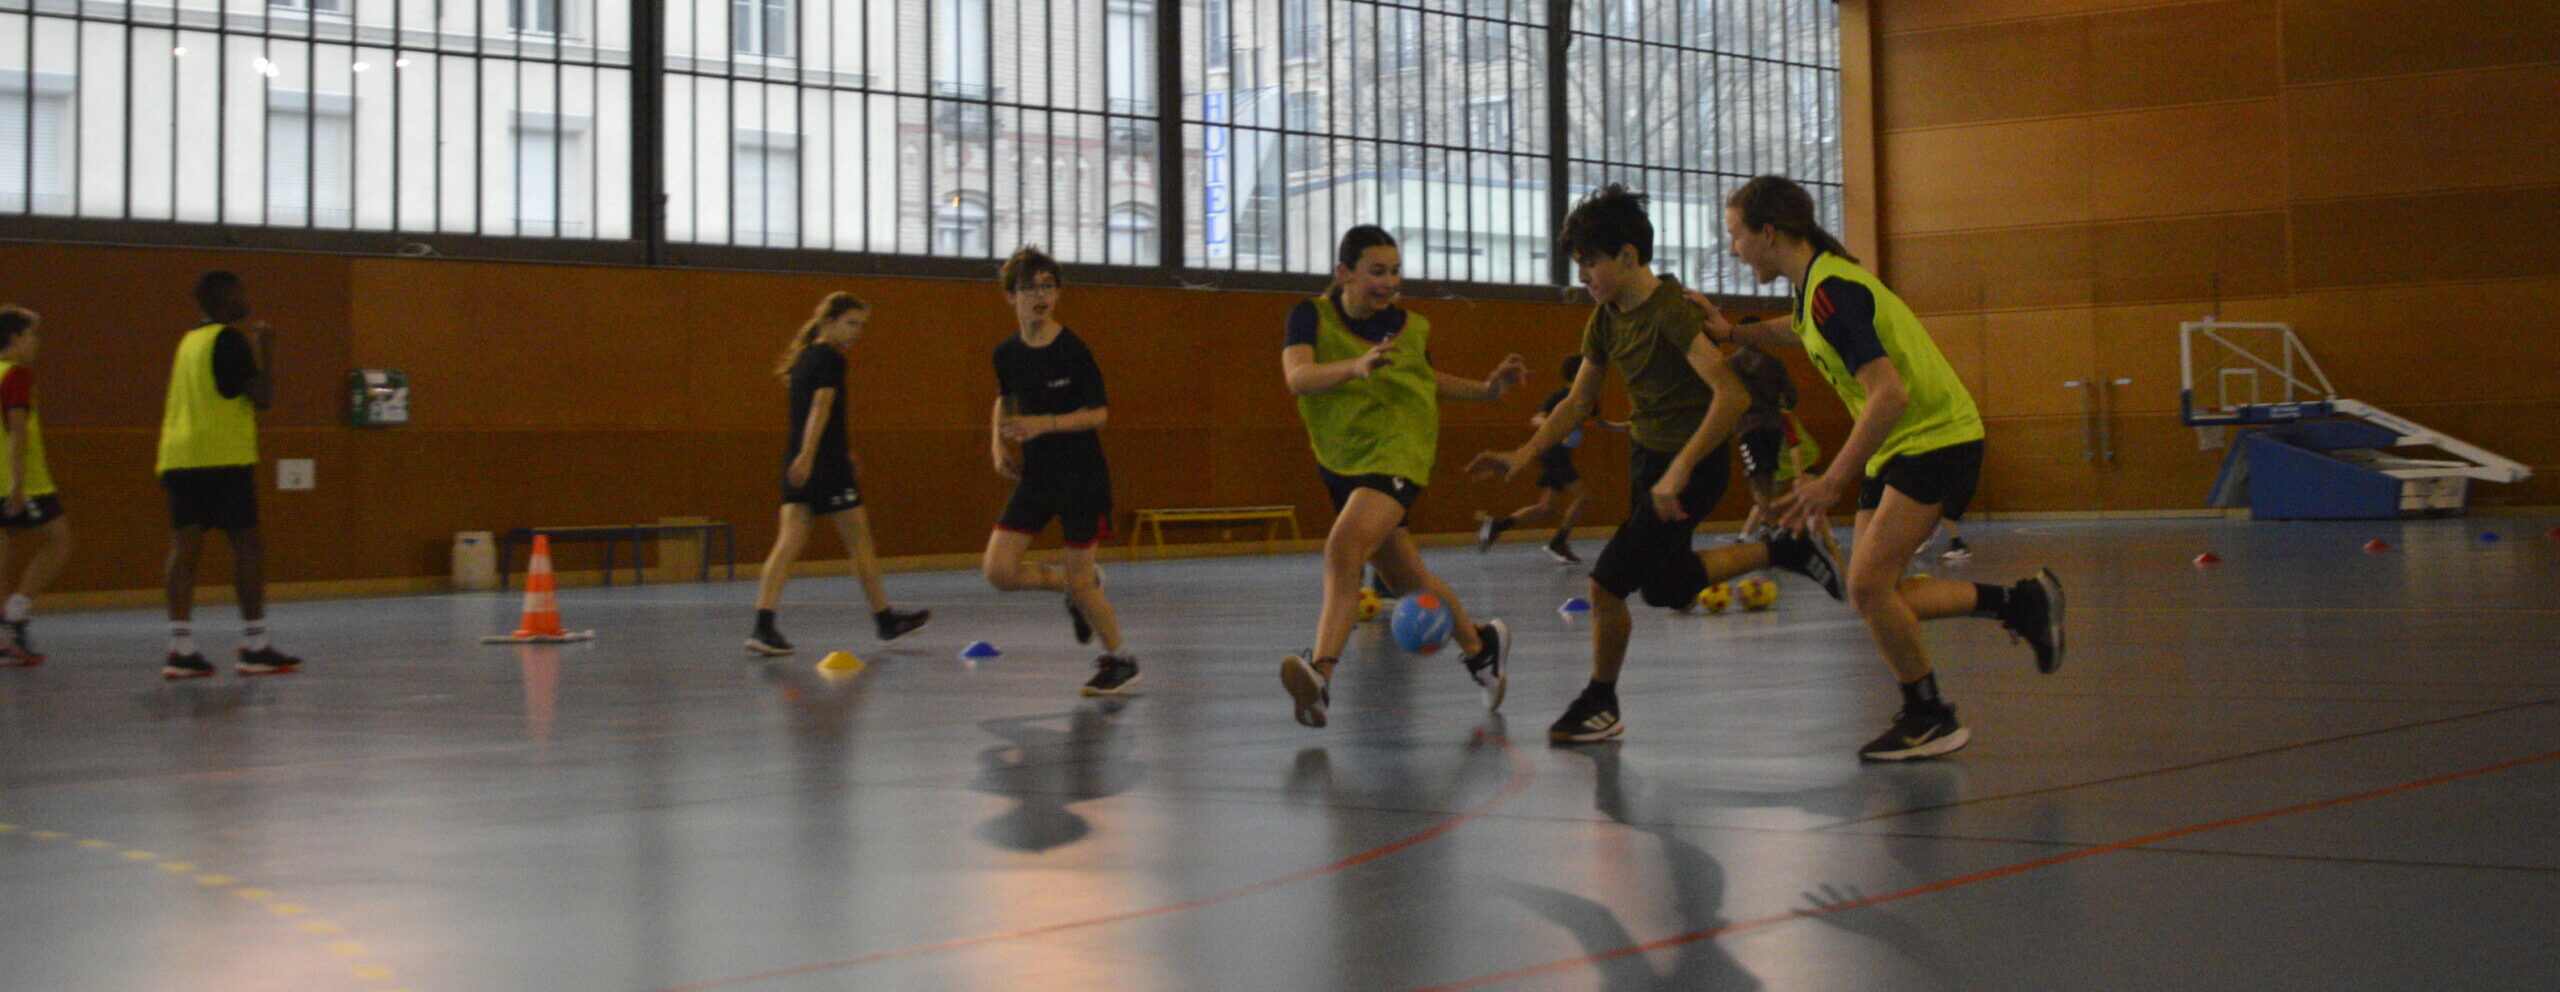 Belleville : la section handball du collège Jean Baptiste Clément, une réussite scolaire et sportive